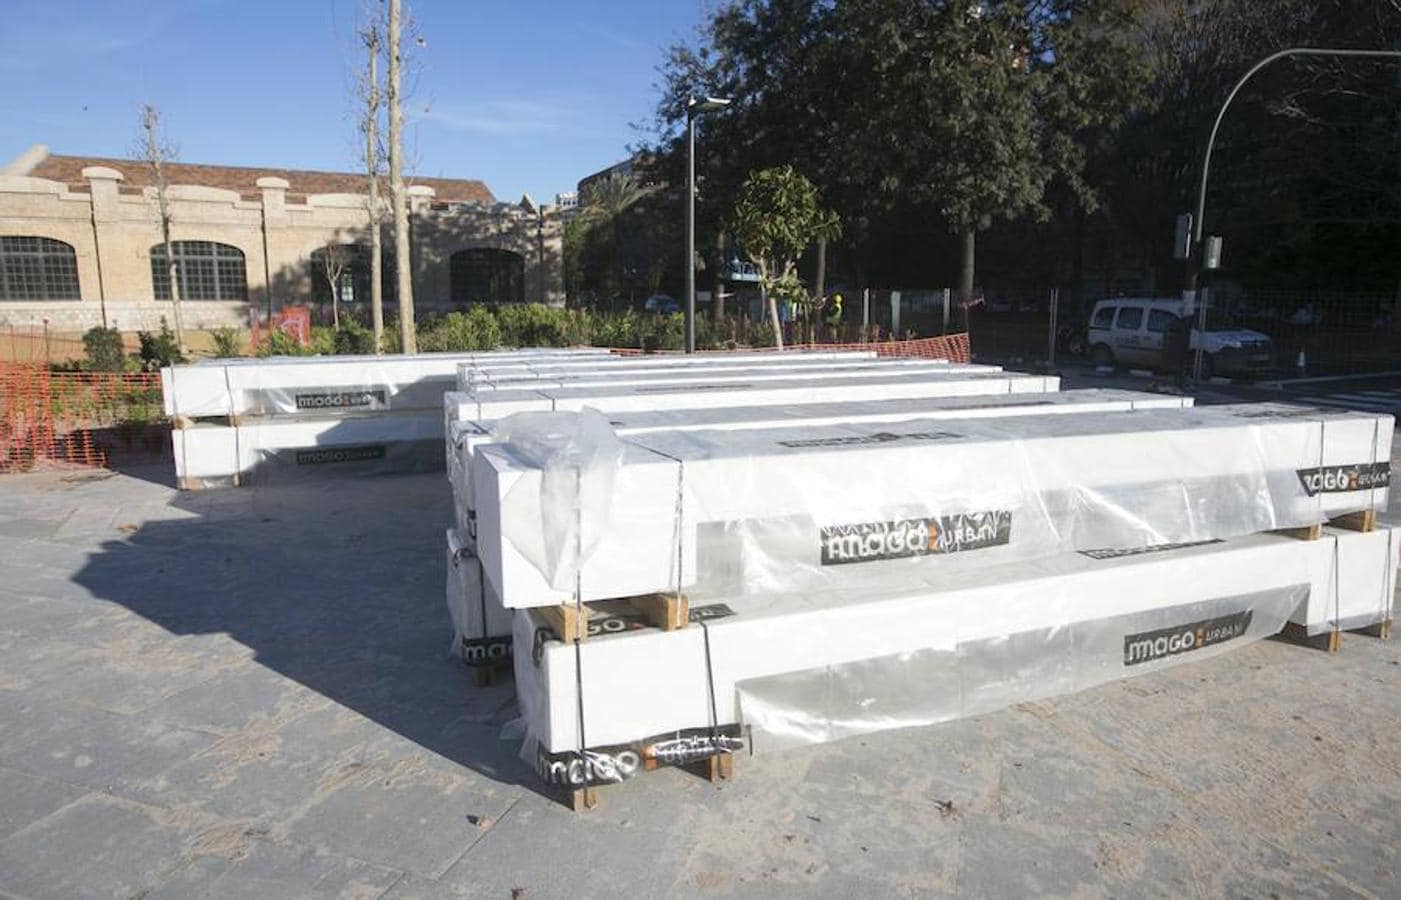 Los vecinos se quejan del uso desmedido de este material en el nuevo espacio de Valencia